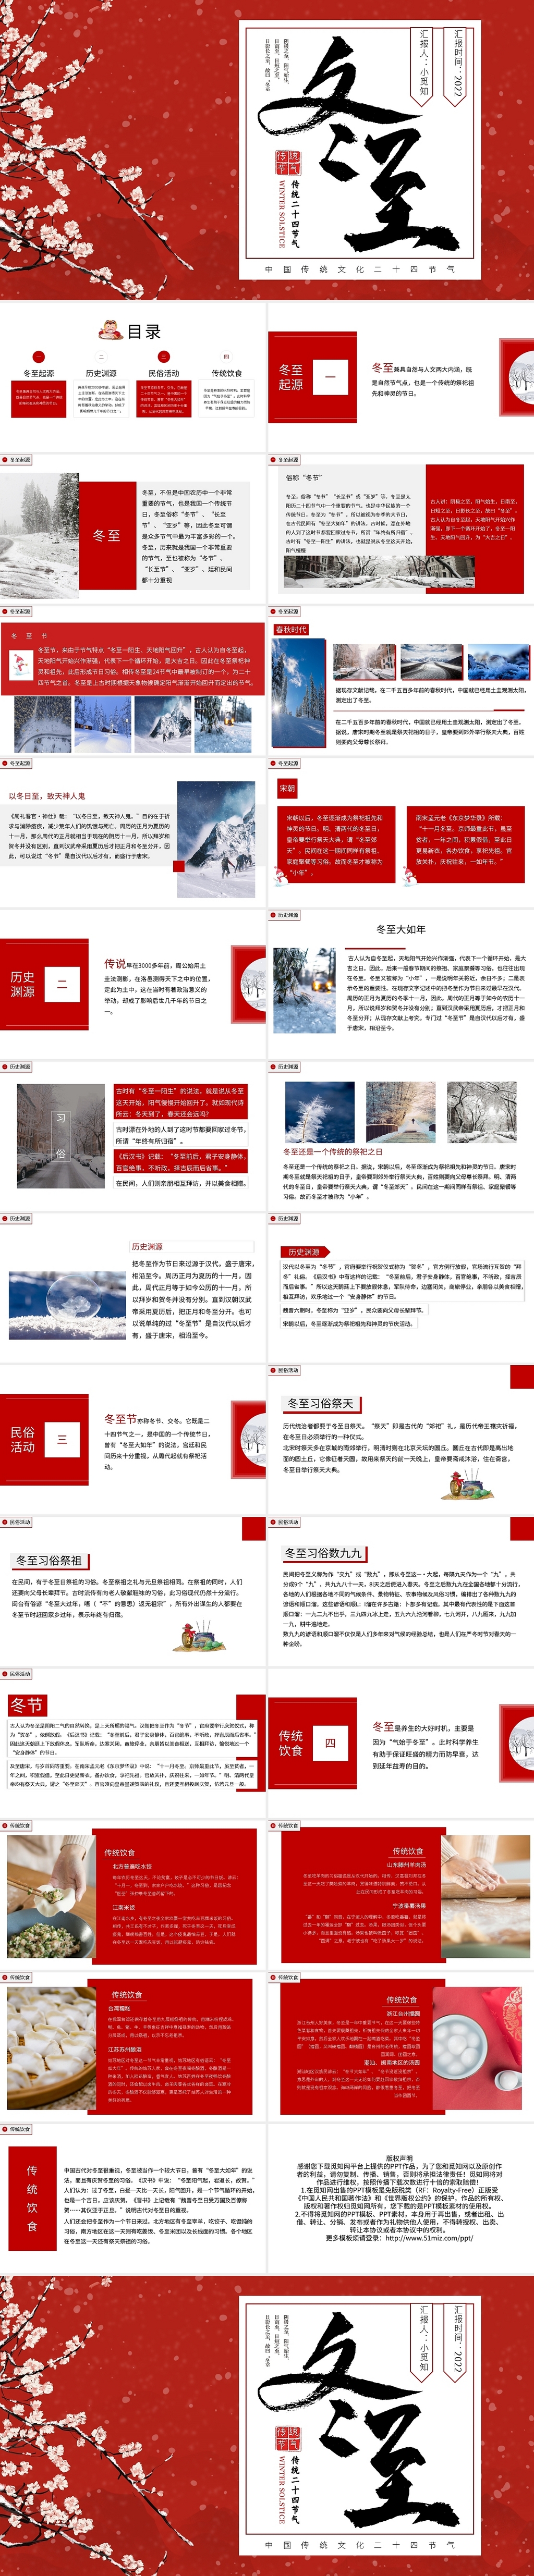 红色简约中国传统文化二十四节气PPT模板宣传PPT动态PPT冬至主题班会